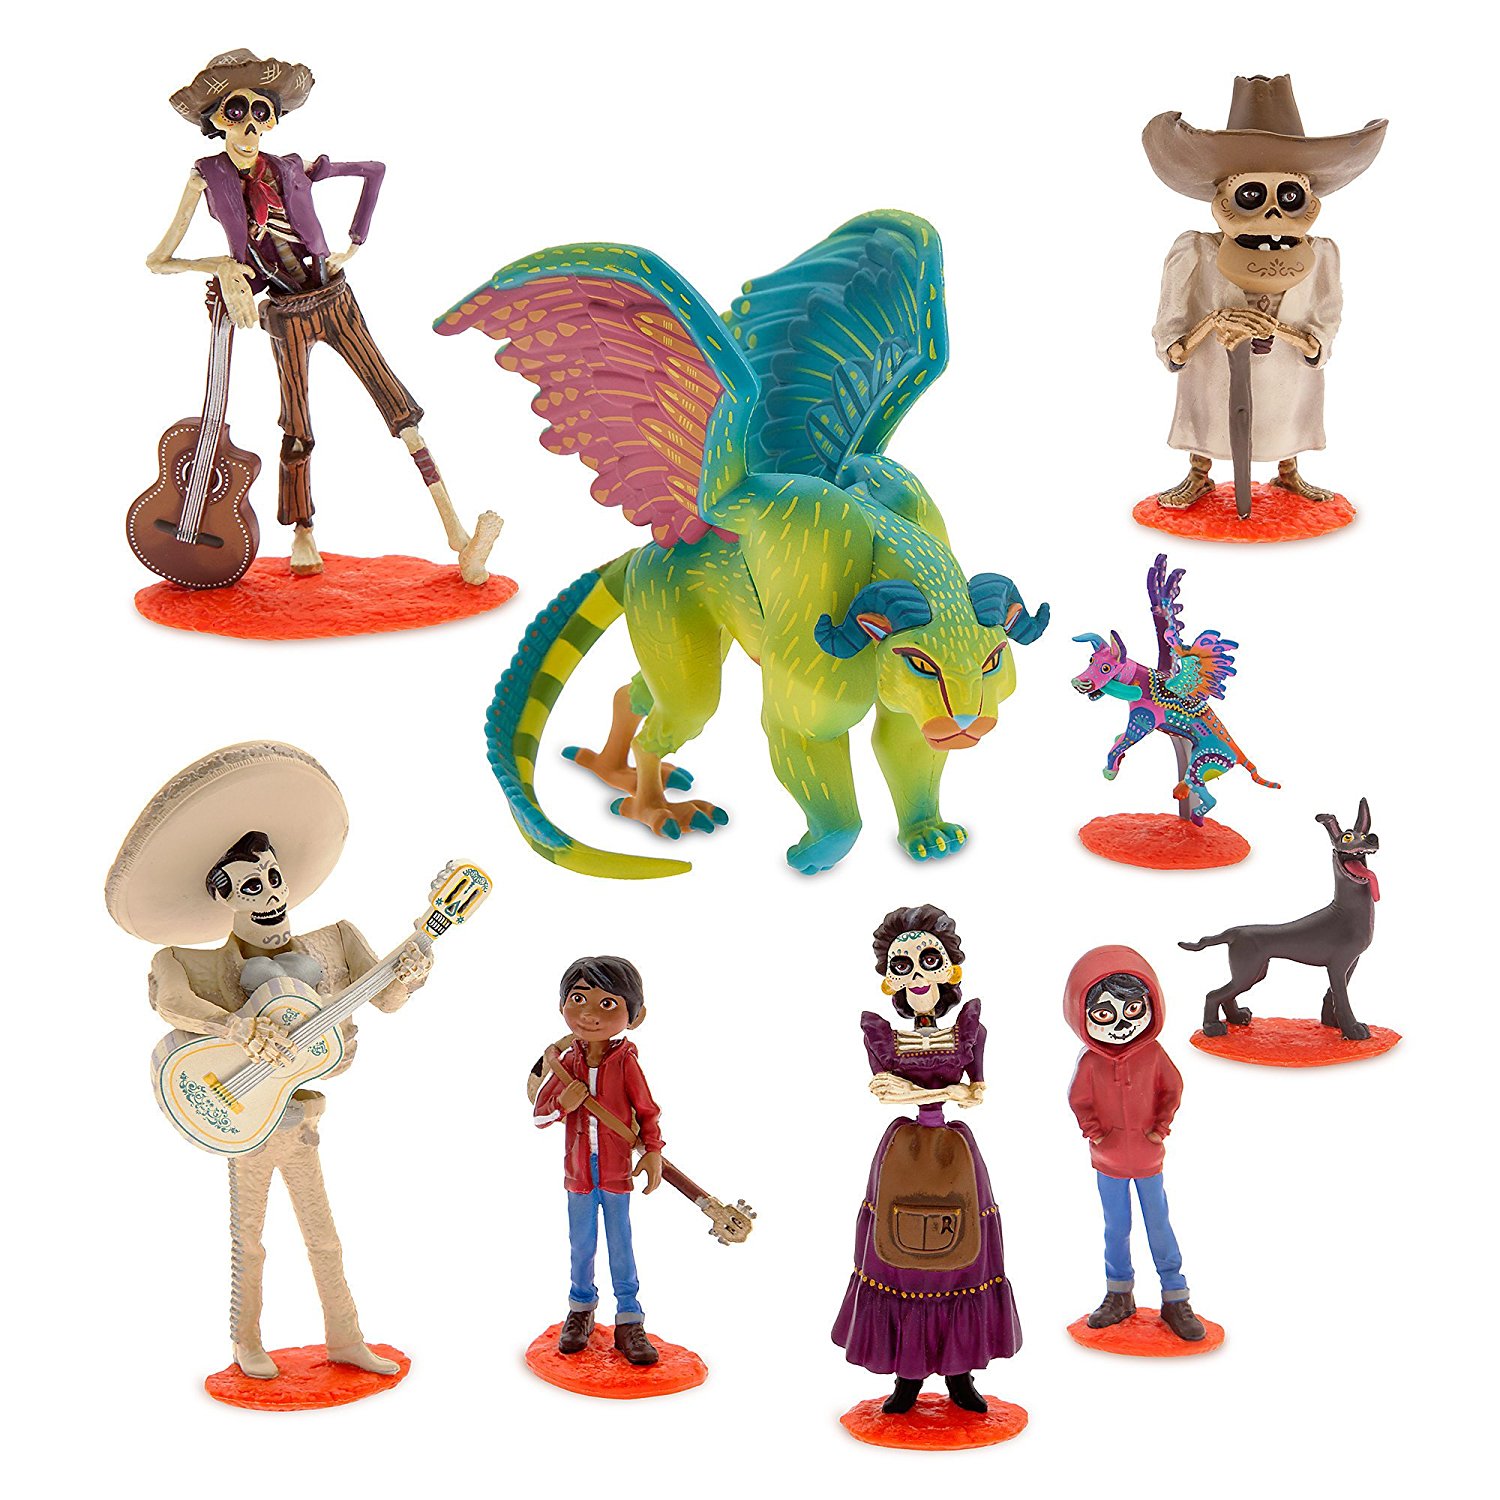 Amazon.com: Disney Coco Deluxe Figurine Set: Toys & Games